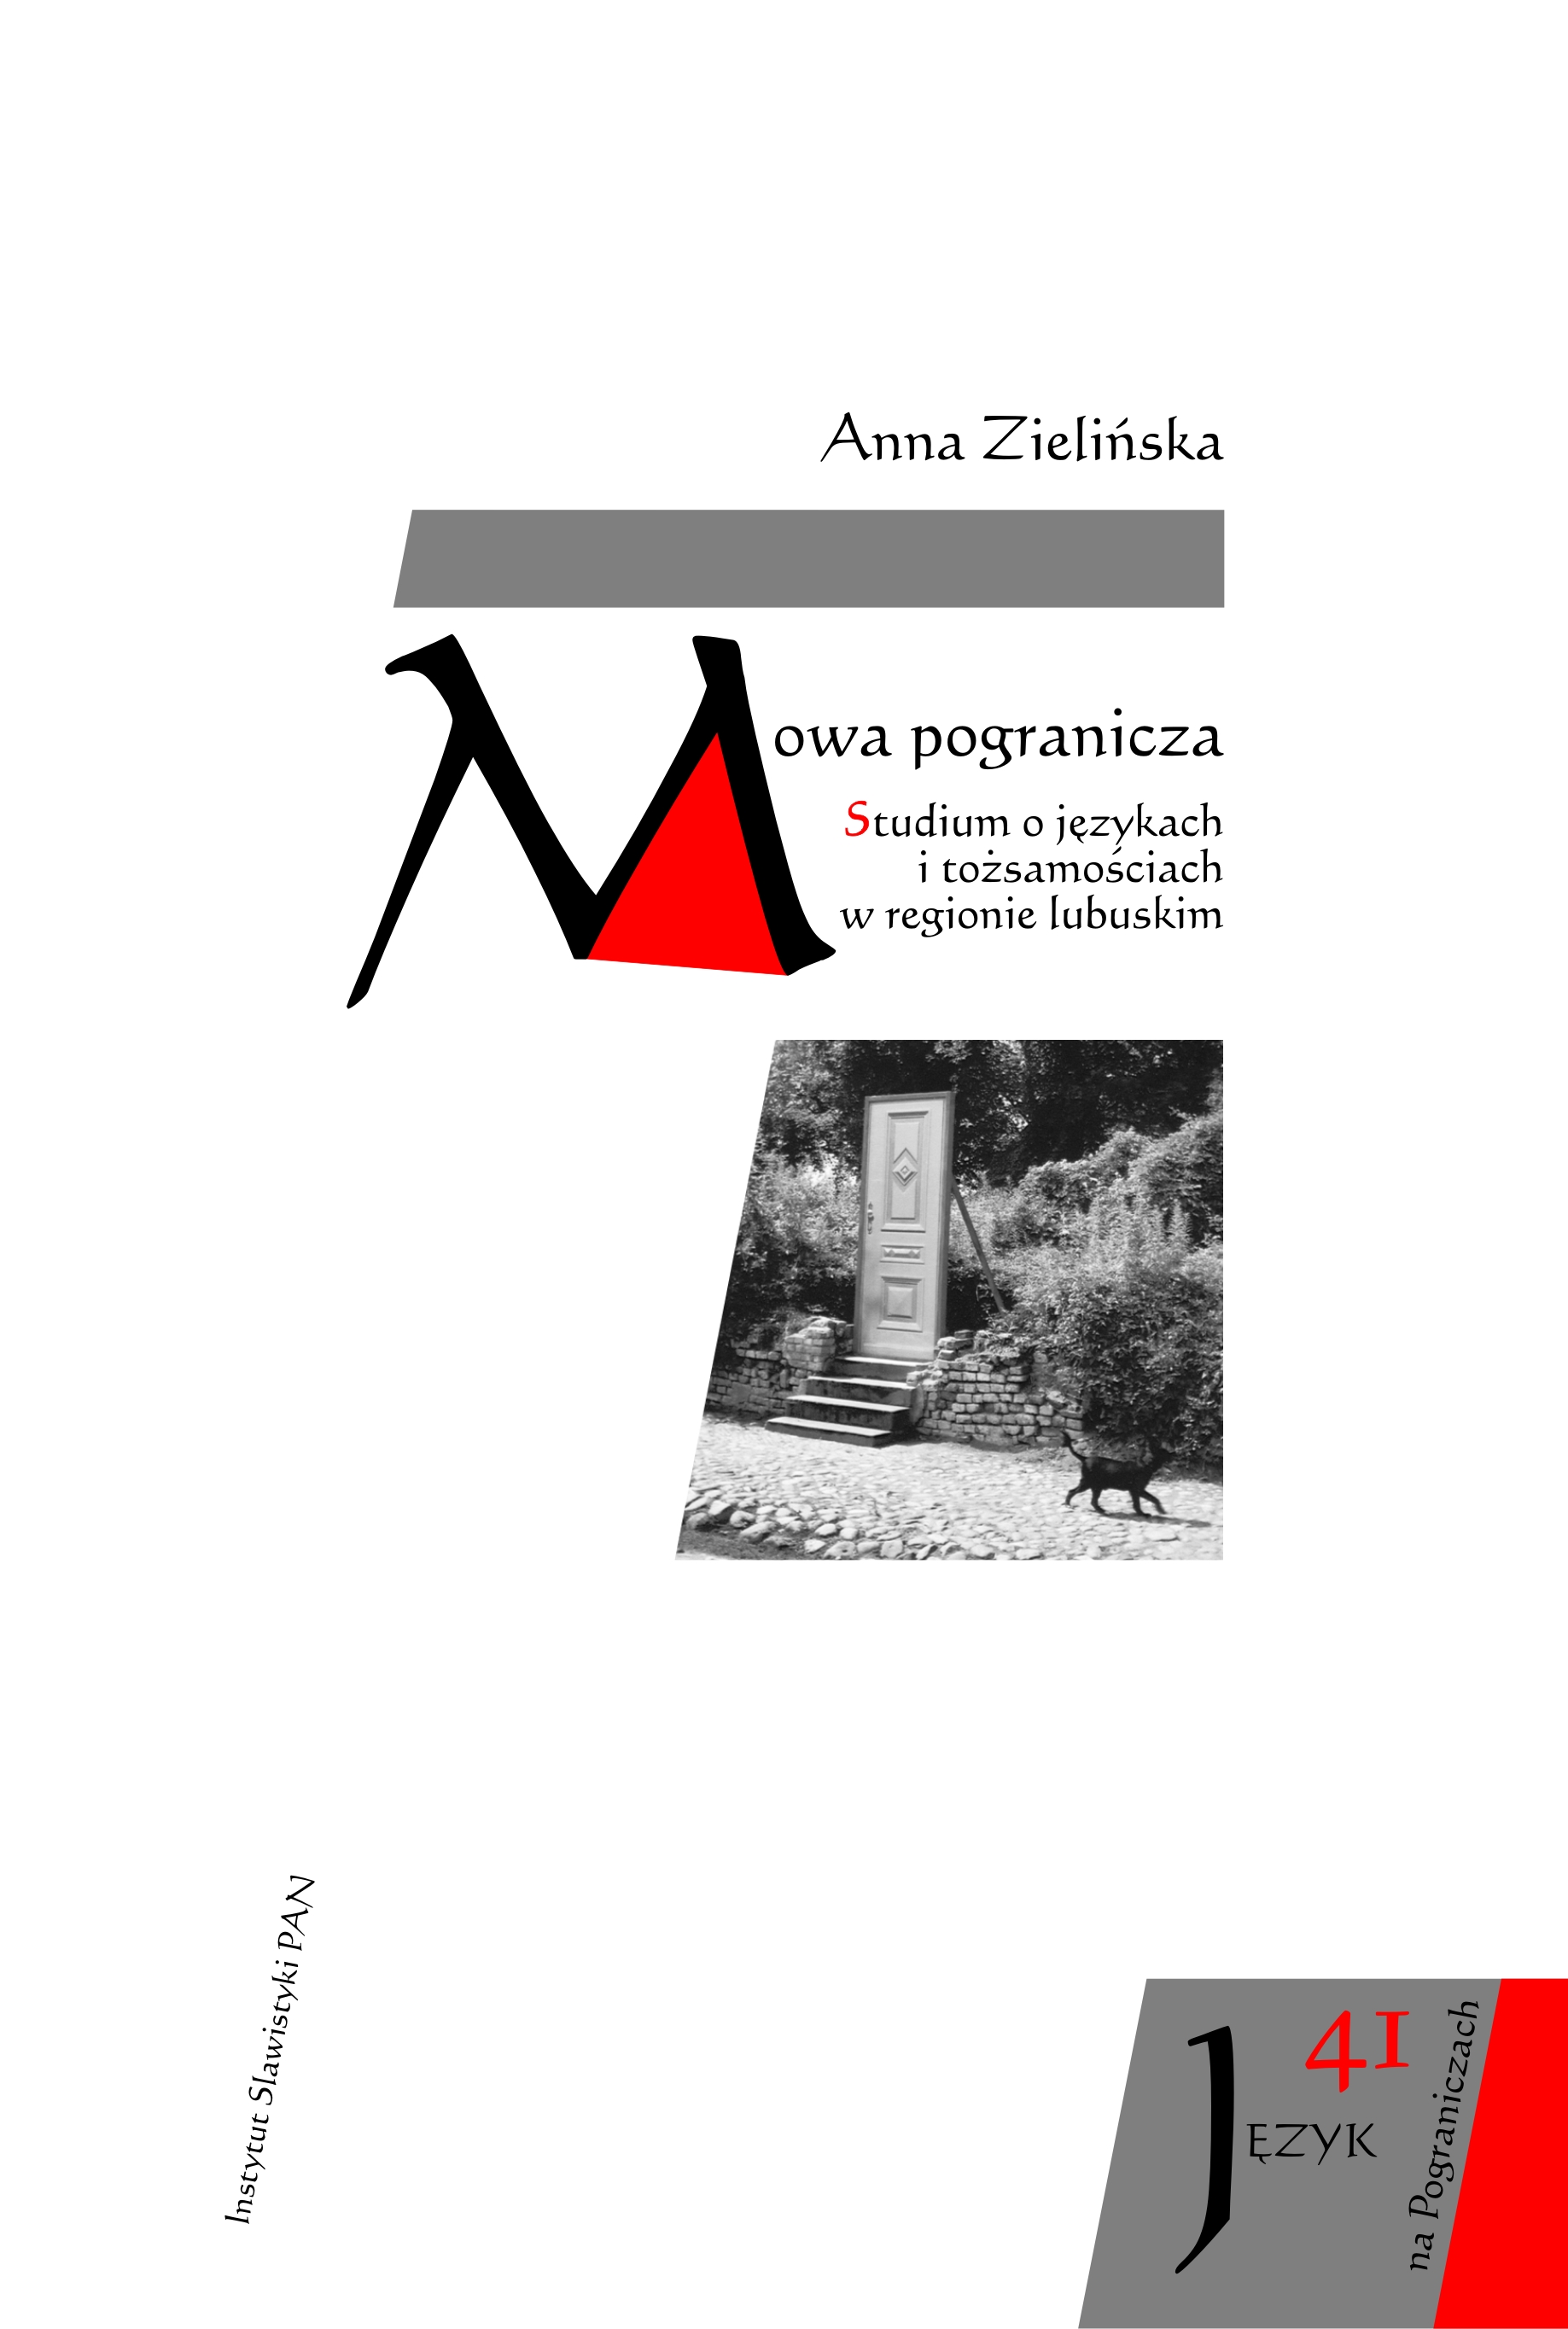 Instytut Slawistyki PAN zaprasza na promocję książki dr hab. Anny Zielińskiej